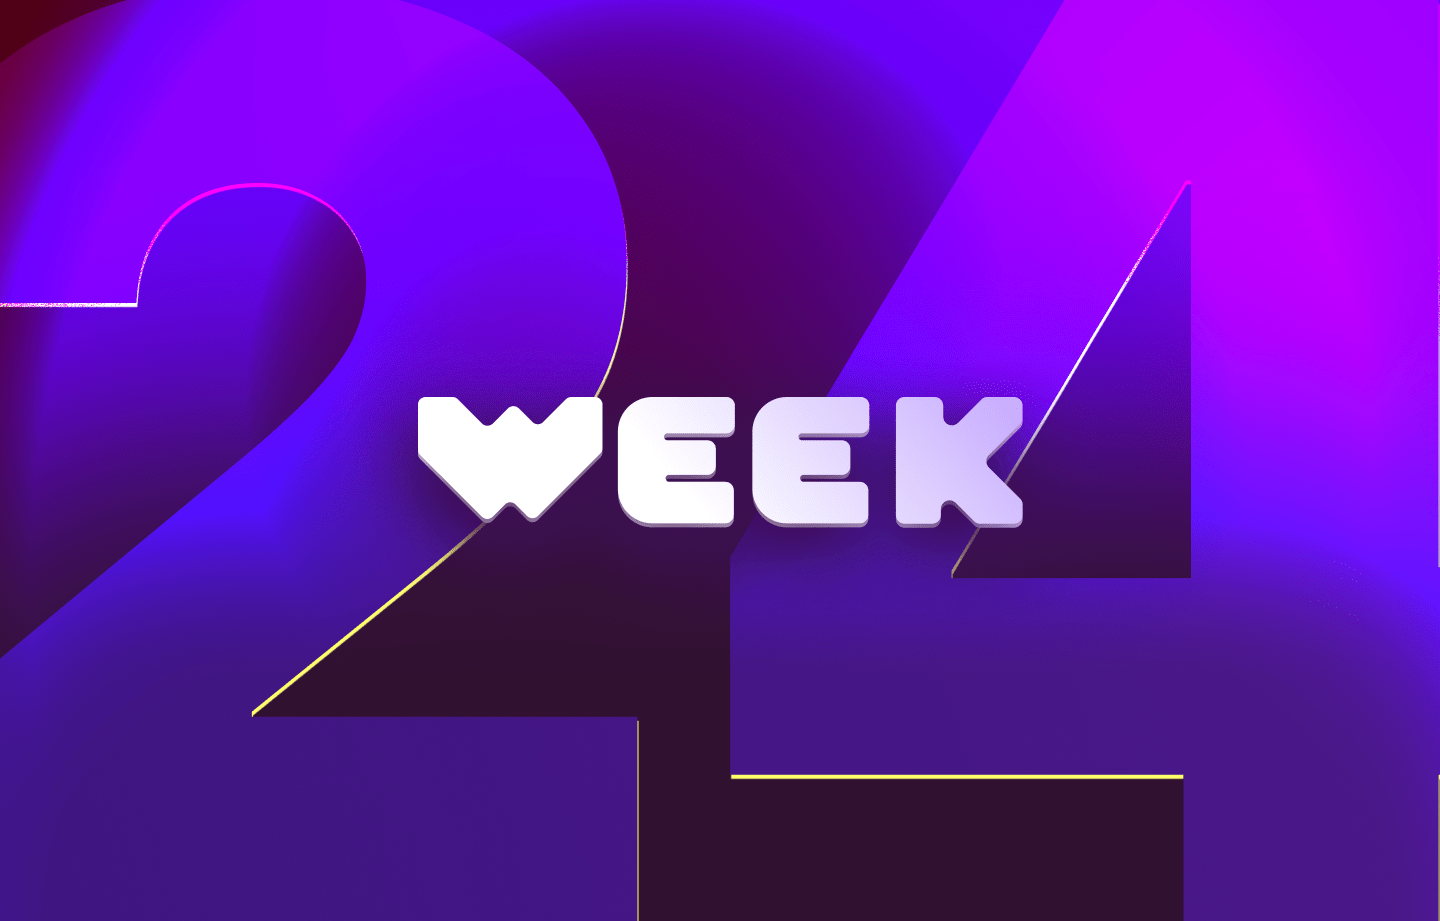 This week in web3 #24